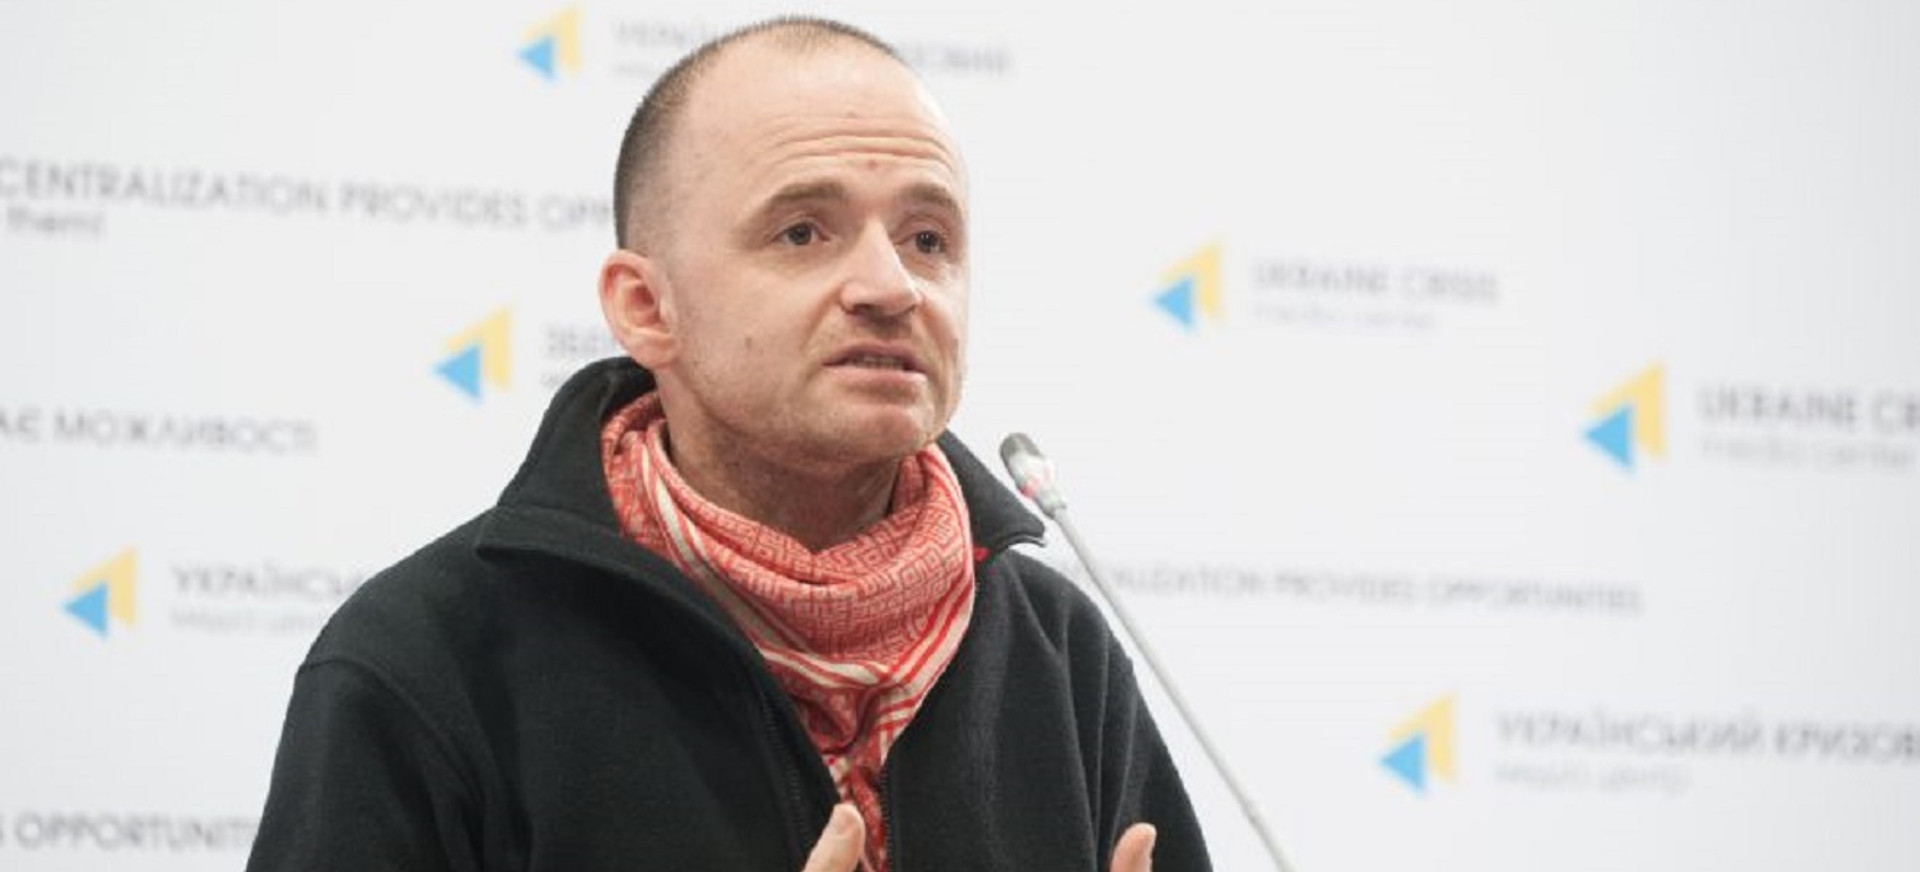 Публічна порка для Лінчевського:  хто за цим стоїть і чим це може обернутися для українців